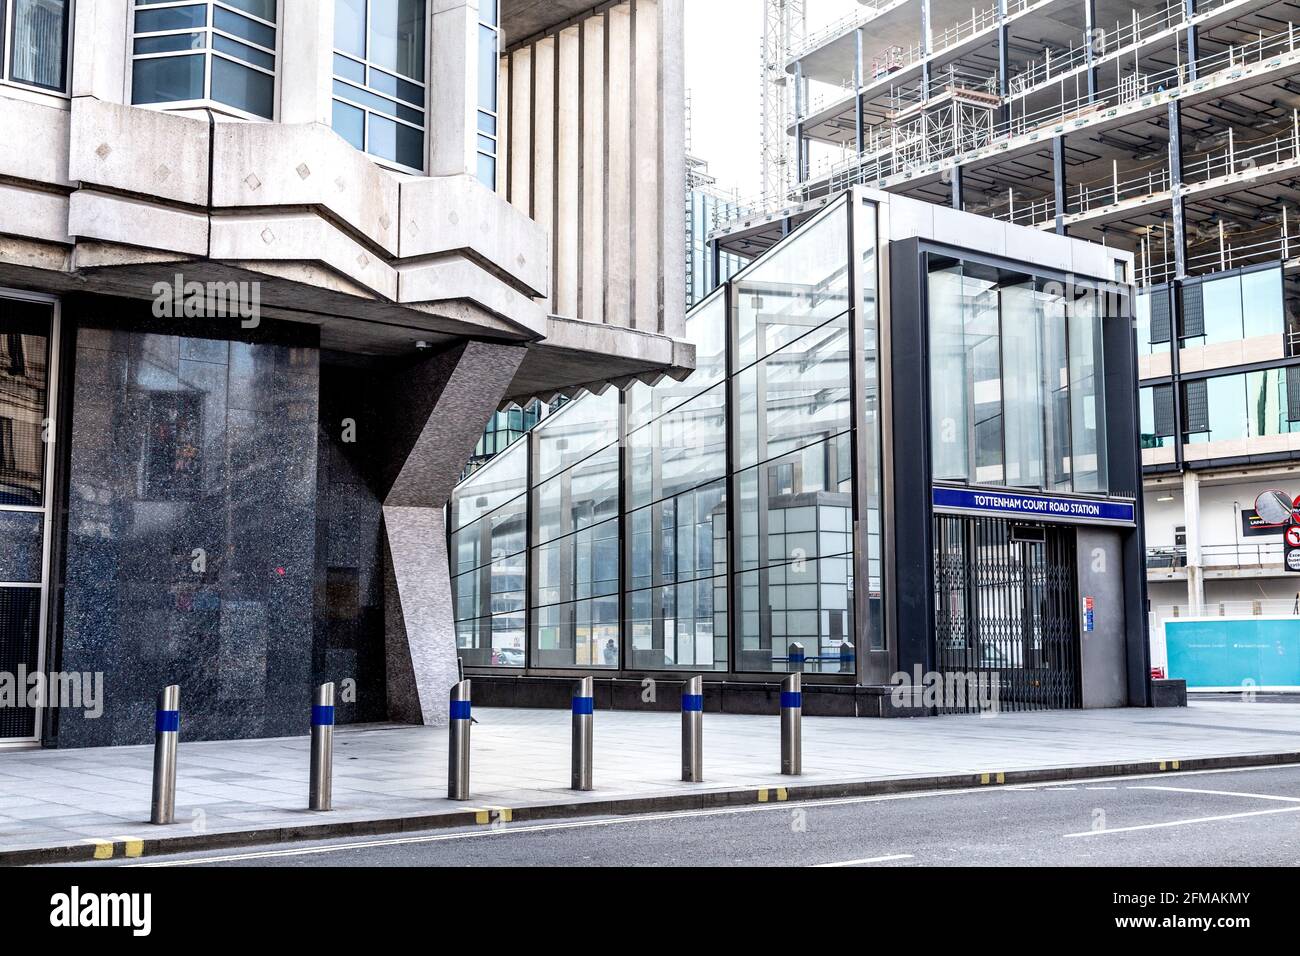 Nouvelle entance contemporaine à la station de métro Tottenham court Road et au détail brutaliste du gratte-ciel de Center point, Londres, Royaume-Uni Banque D'Images